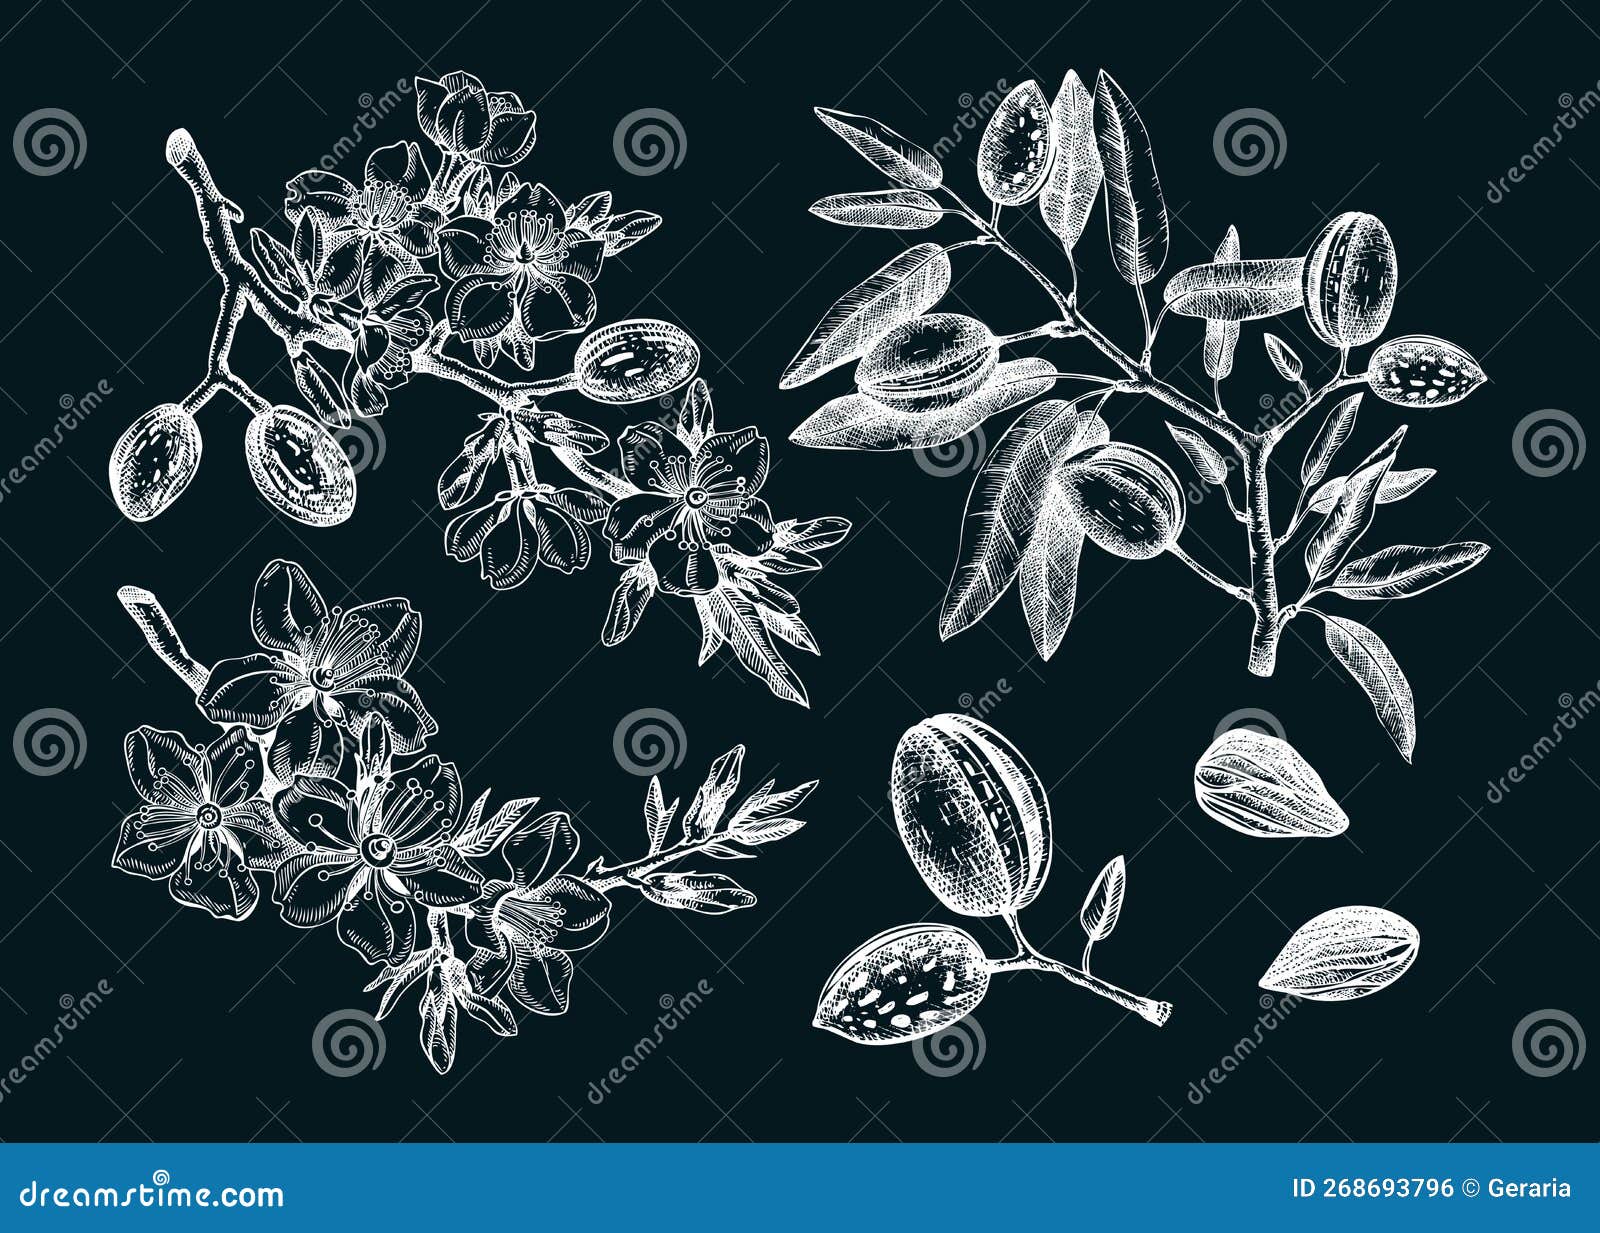 Almond Vector Set on Chalkboard. Botanical Spring Illustrations